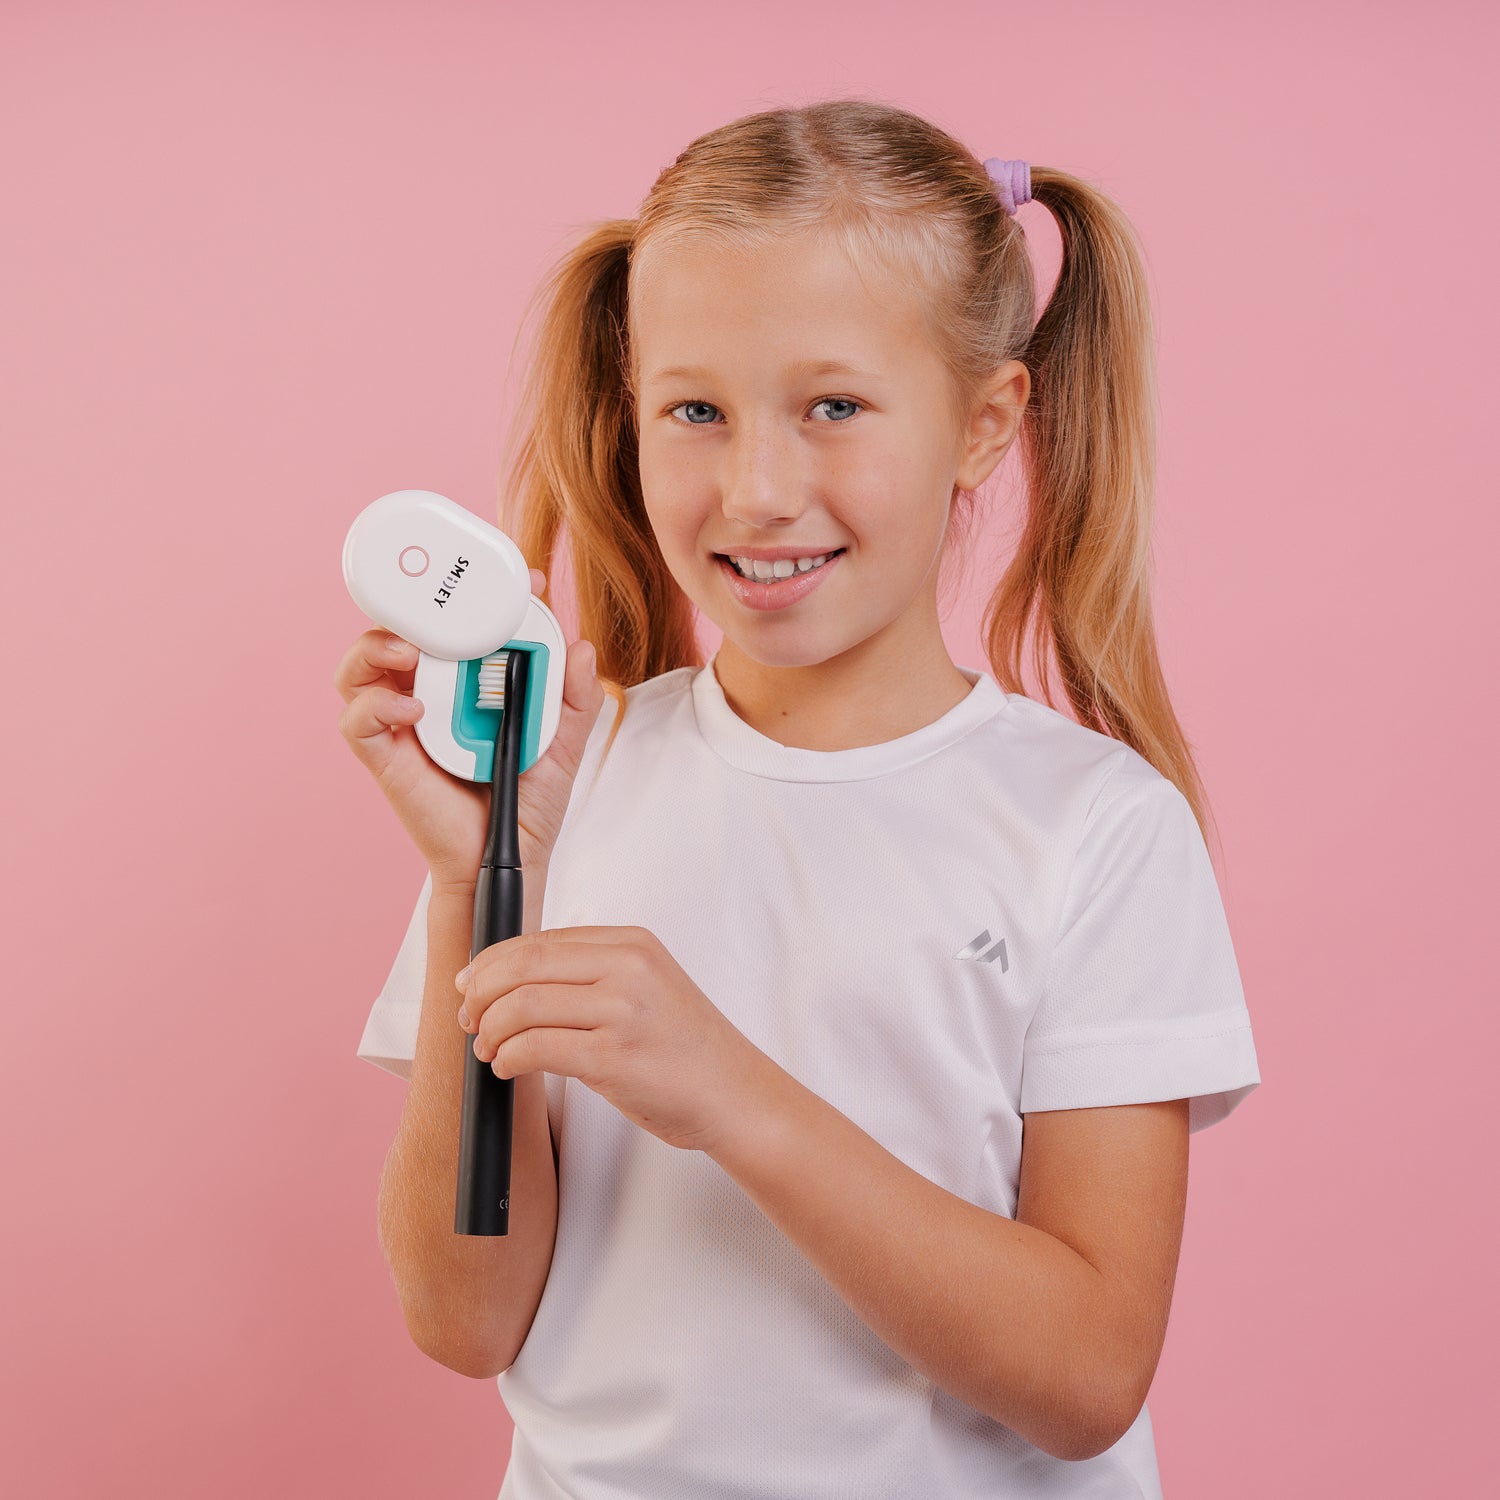 детская электрическая зубная щетка Smiley Light черная купити дитячу електричну зубну щітку купить детскую электрическую зубную щетку електрична зубна щітка дитяча купить электрощетку детскую детская электрическая зубная щетка